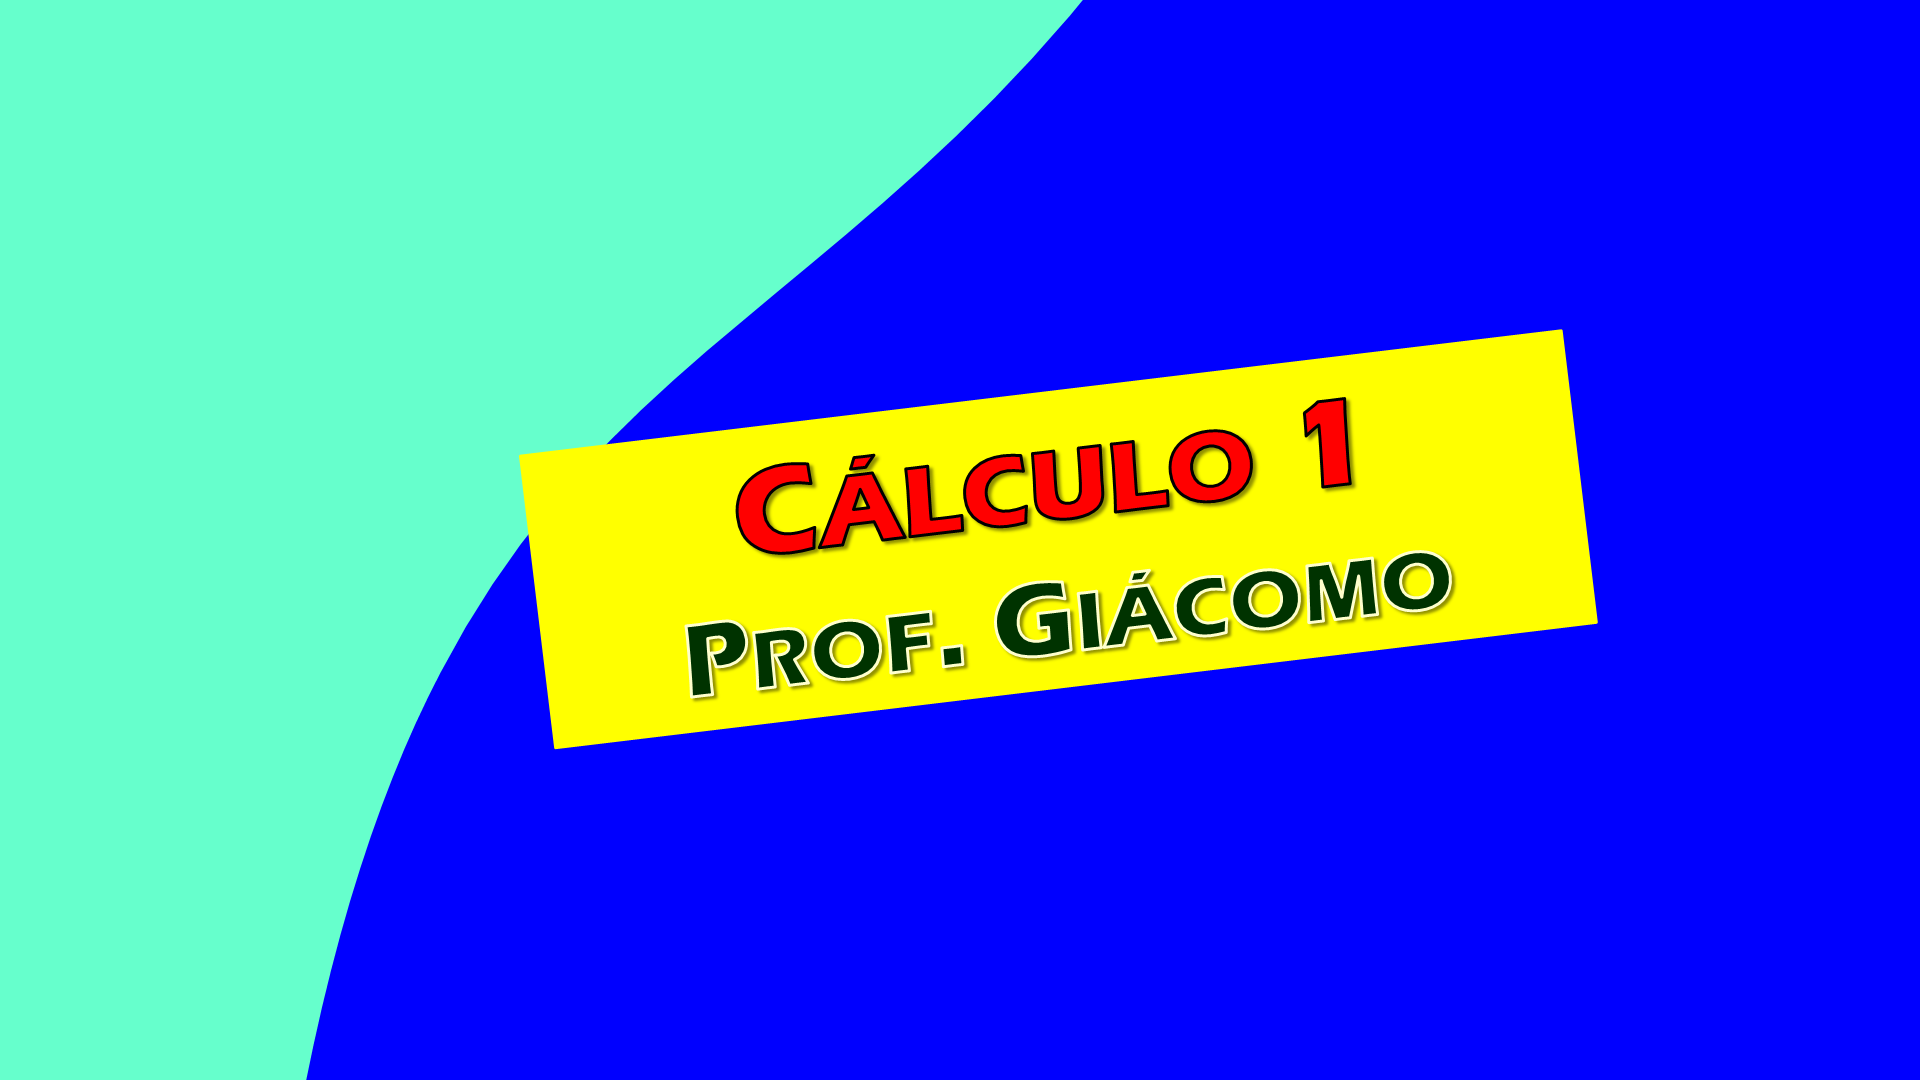 Cálculo 1 - Prof. Giácomo